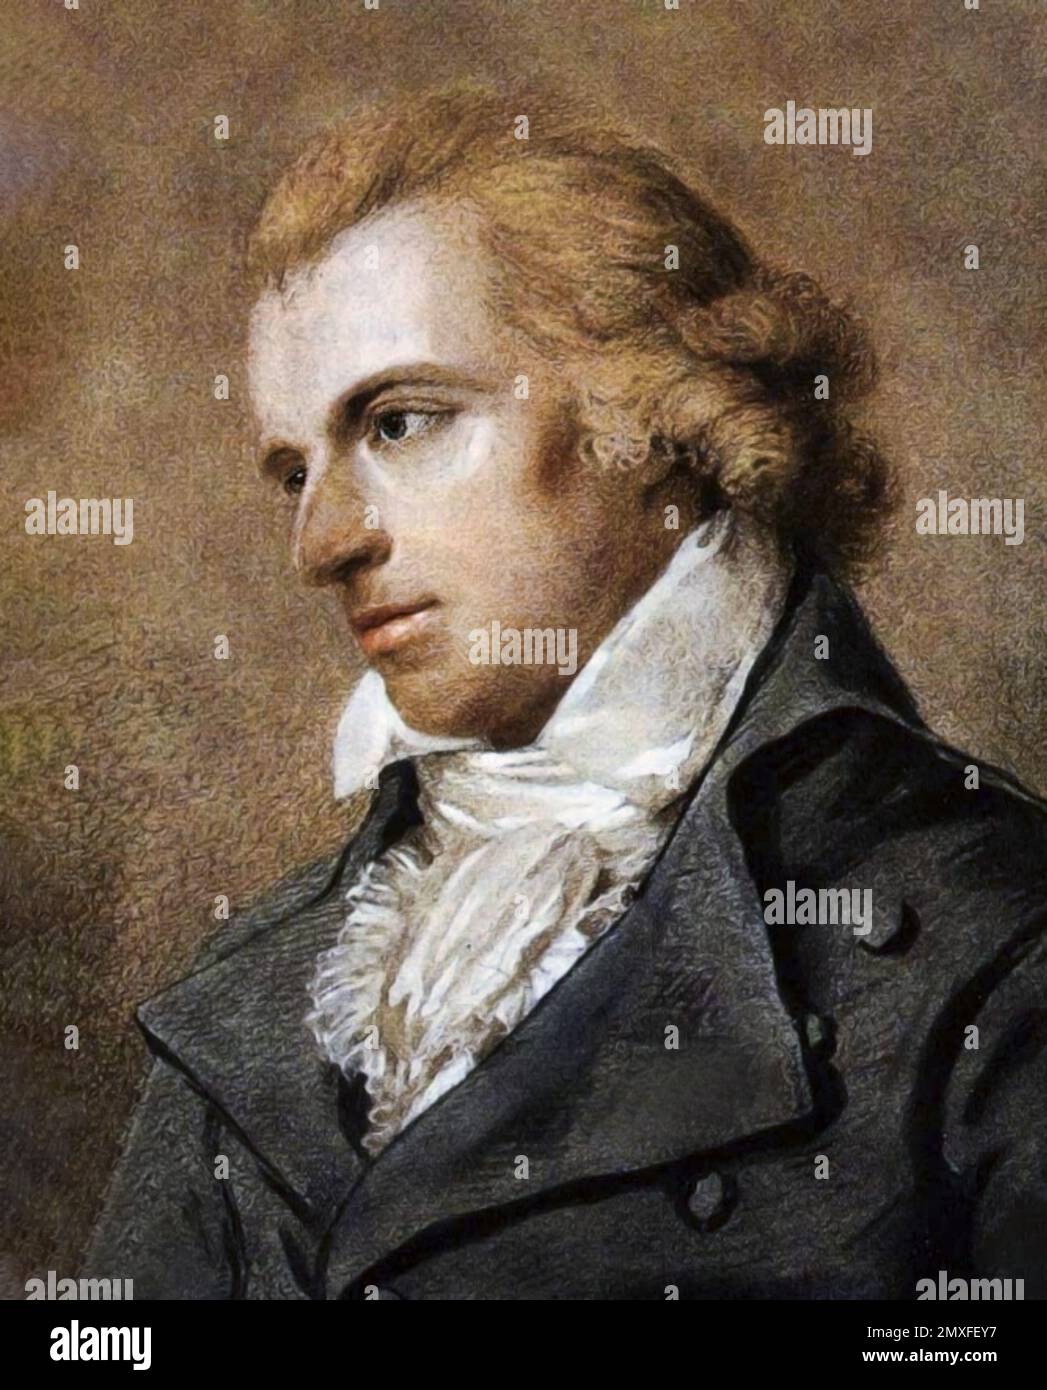 Friedrich Schiller. Portrait du dramaturge, philosophe et poète allemand Johann Christoph Friedrich von Schiller (1759-1805) par Ludovike Simanowiz, vers 1793/4 Banque D'Images